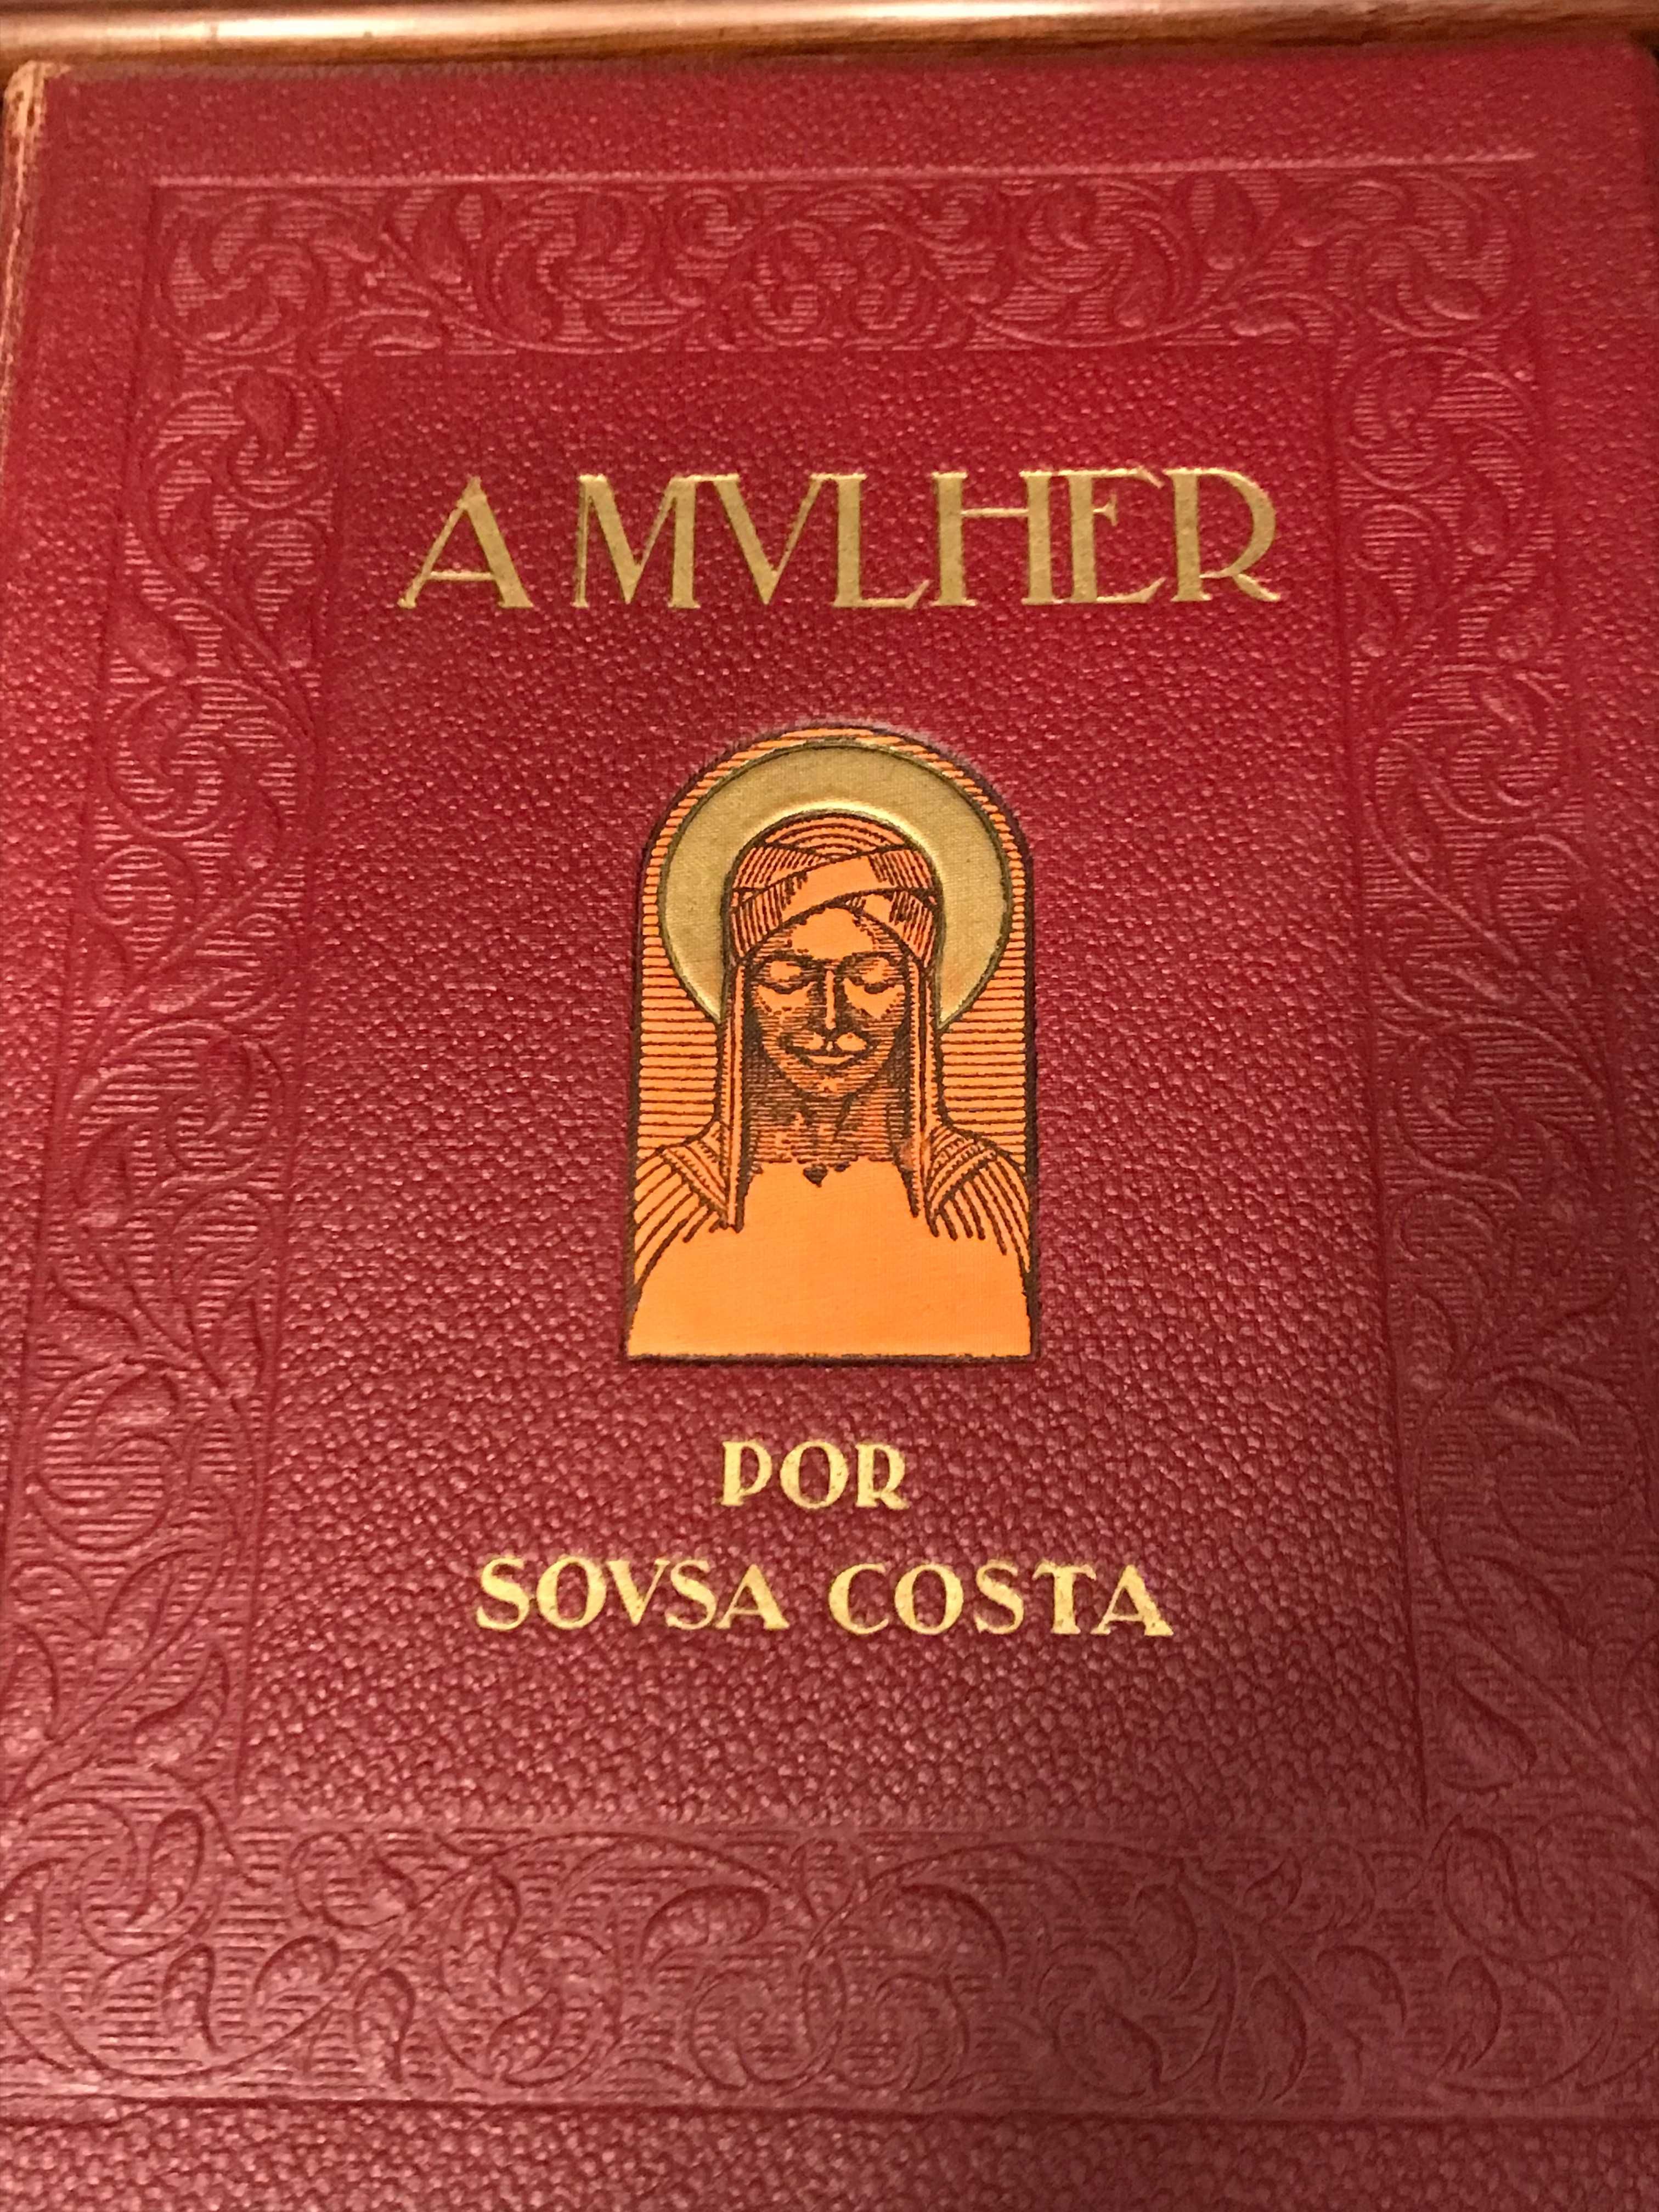 Livro "A Mulher" por Sousa Costa